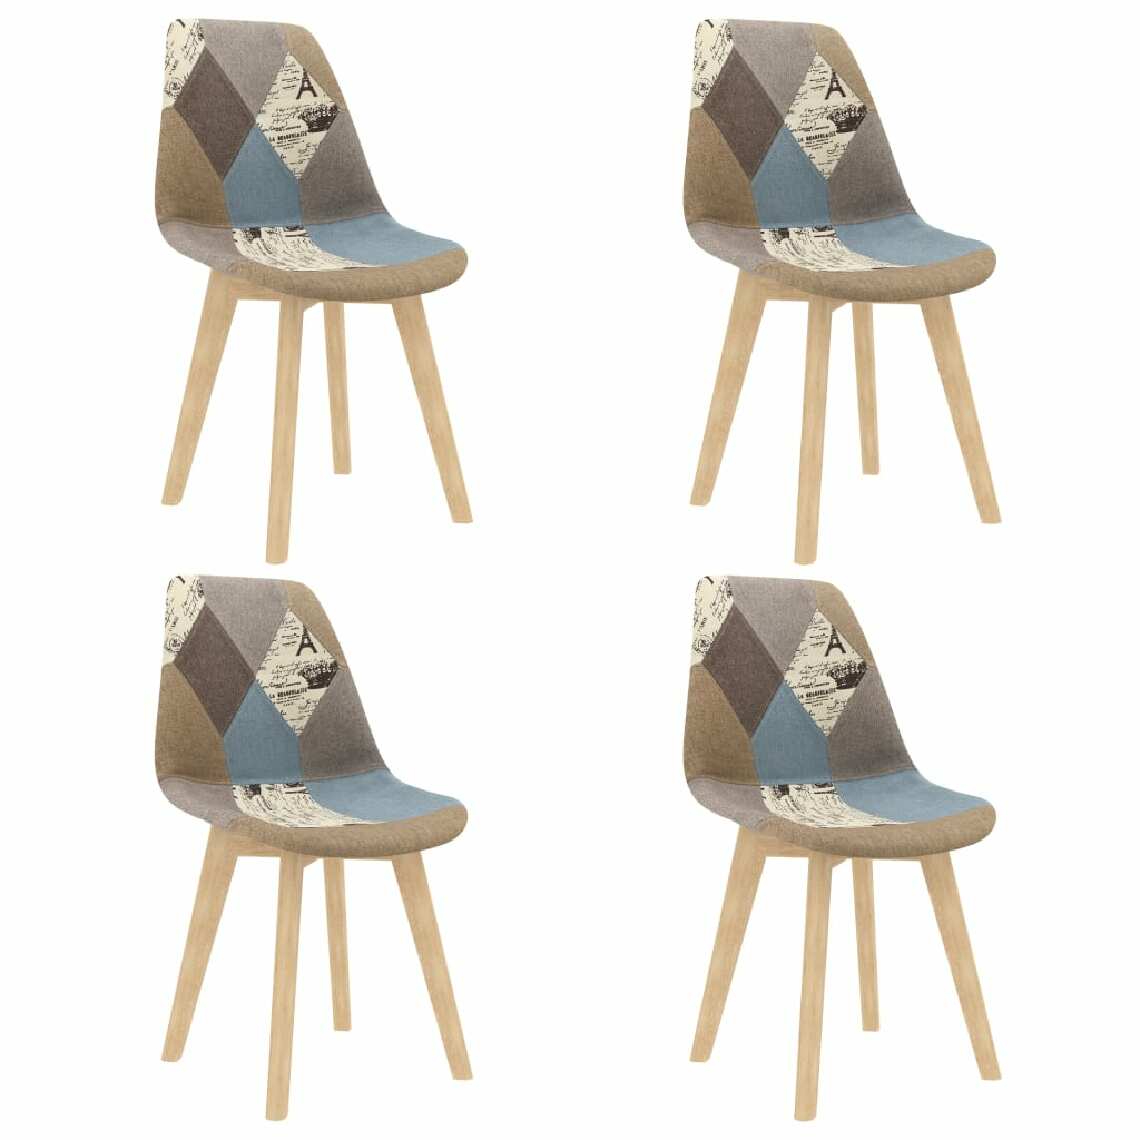 Chunhelife - Chunhelife Chaises de salle à manger 4 pcs Design de patchwork Gris Tissu - Chaises